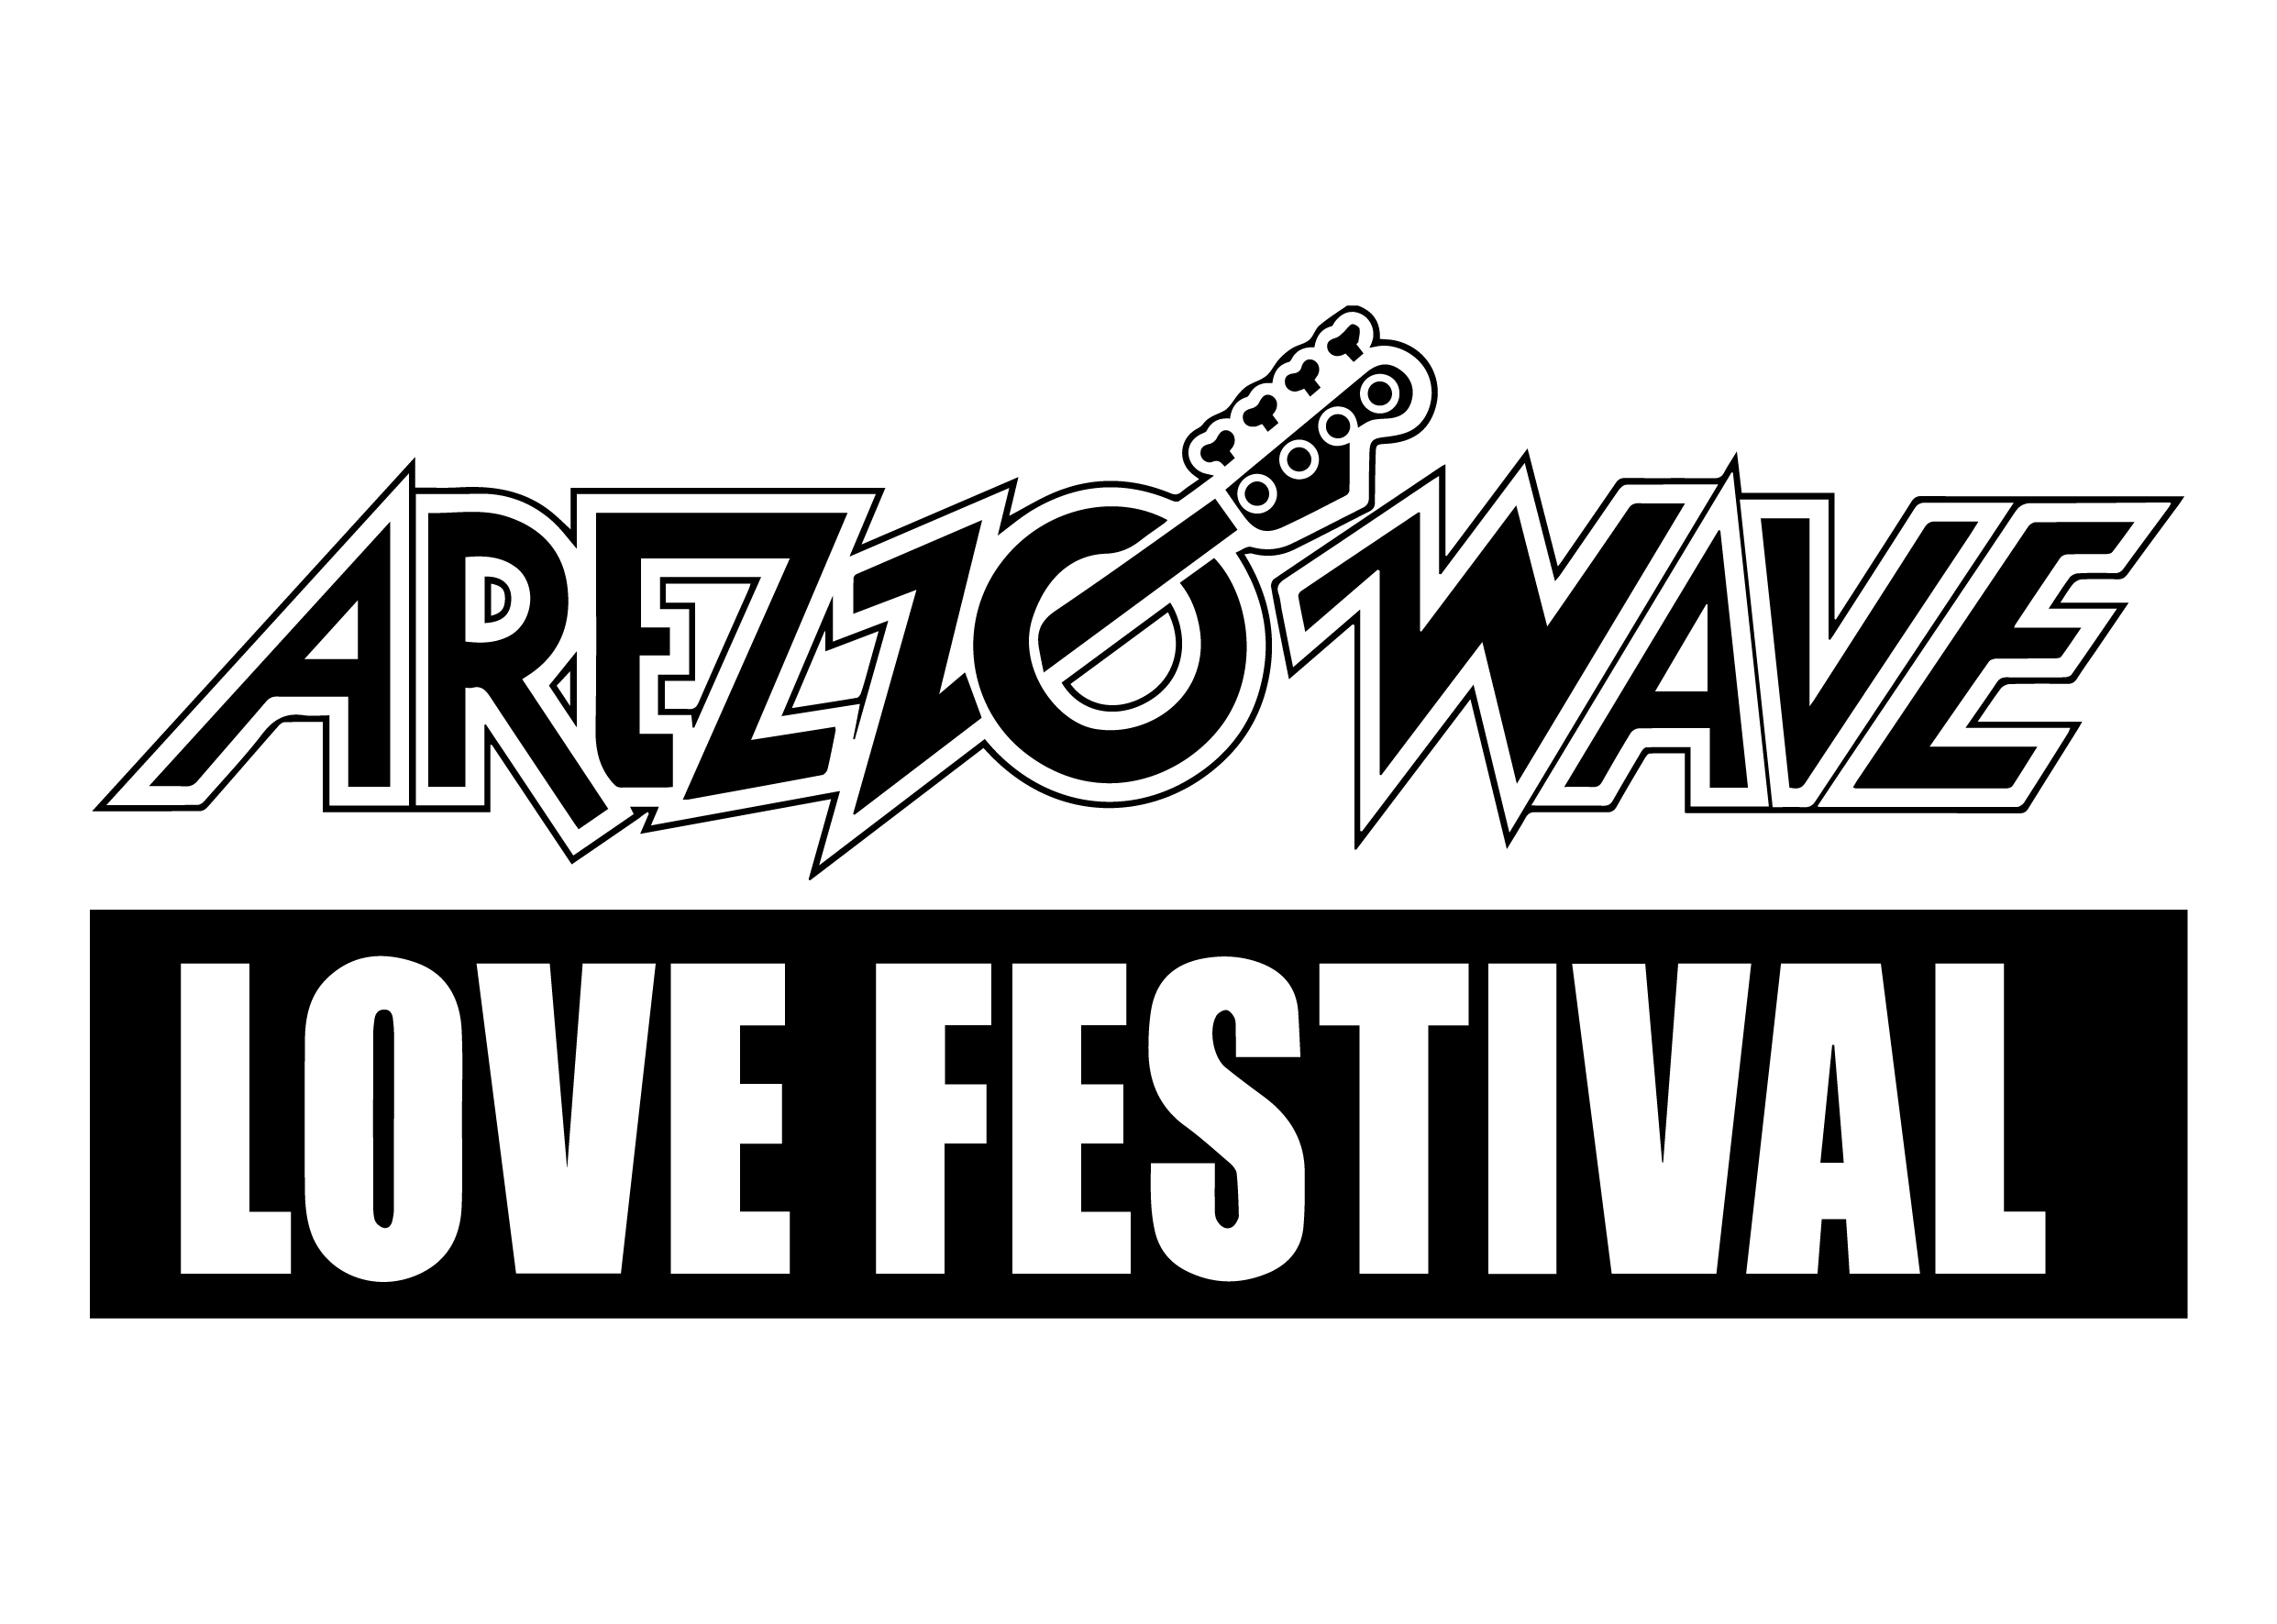 Arezzo wave love festival - Sponsor - Reload Soundfestival